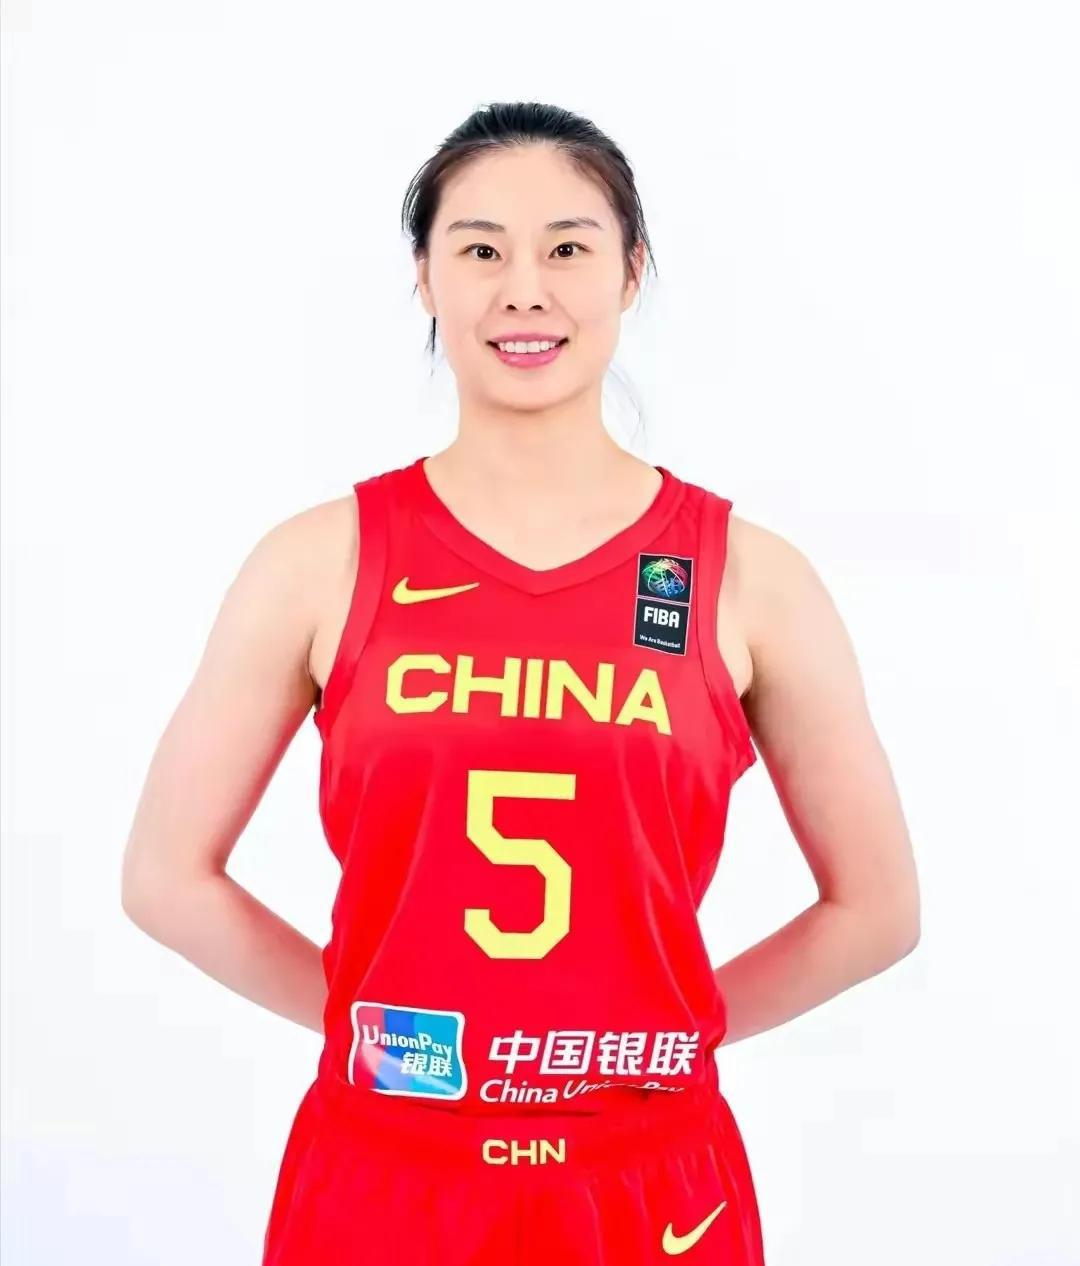 亚洲杯中国女篮队员。女篮们无畏金兰，勇夺桂冠！
这个奖杯来之不易，都少不了每一个(2)